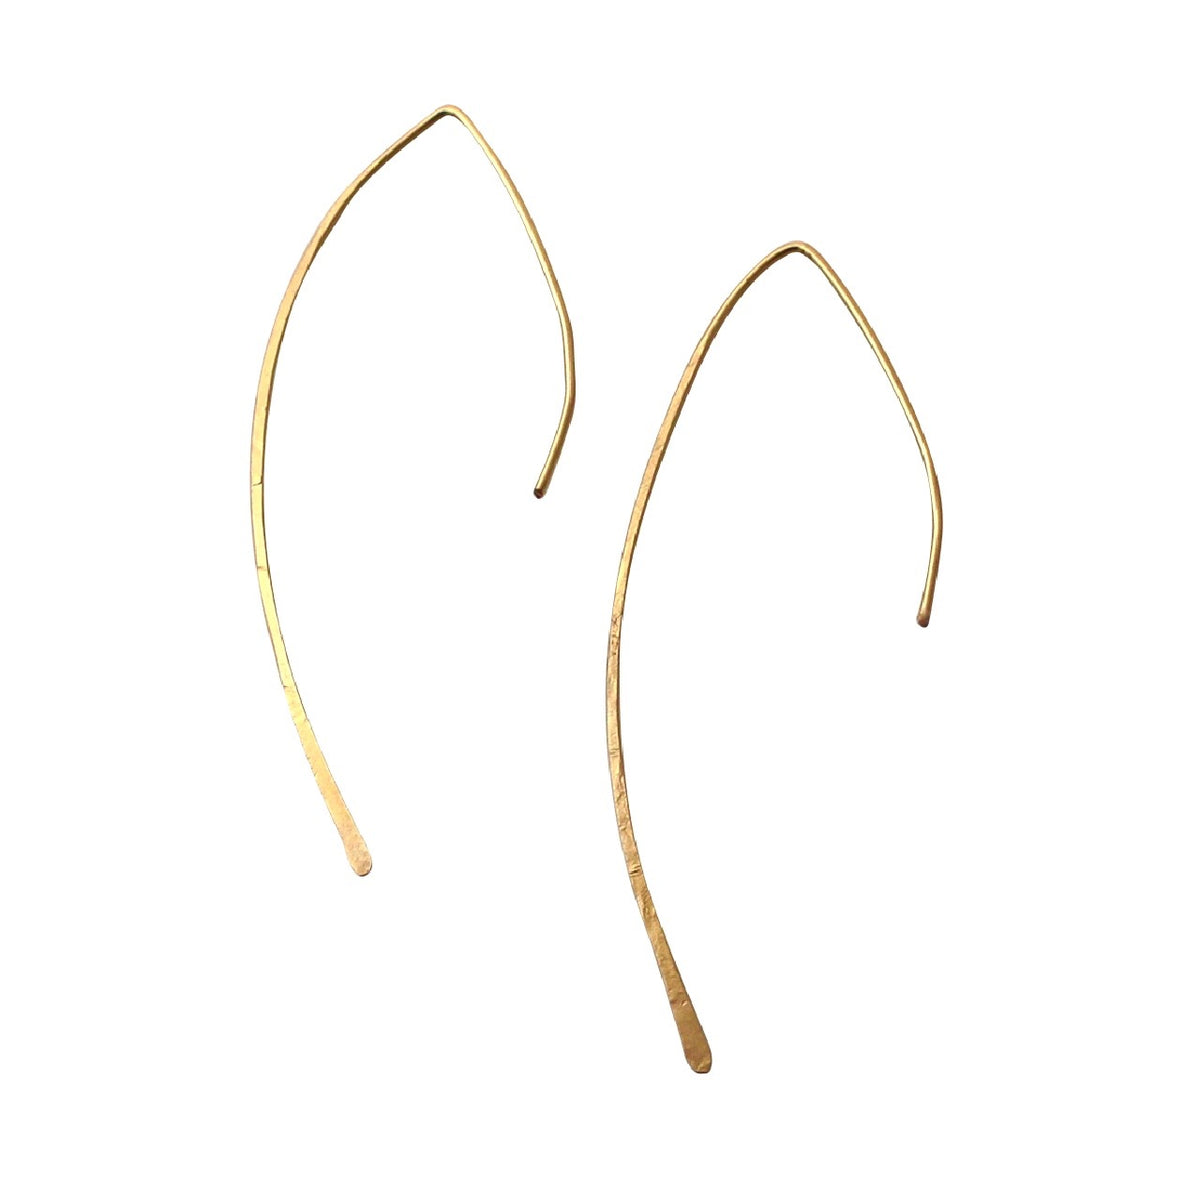 Arced Ear Threader earrings – A Box For My Treasure